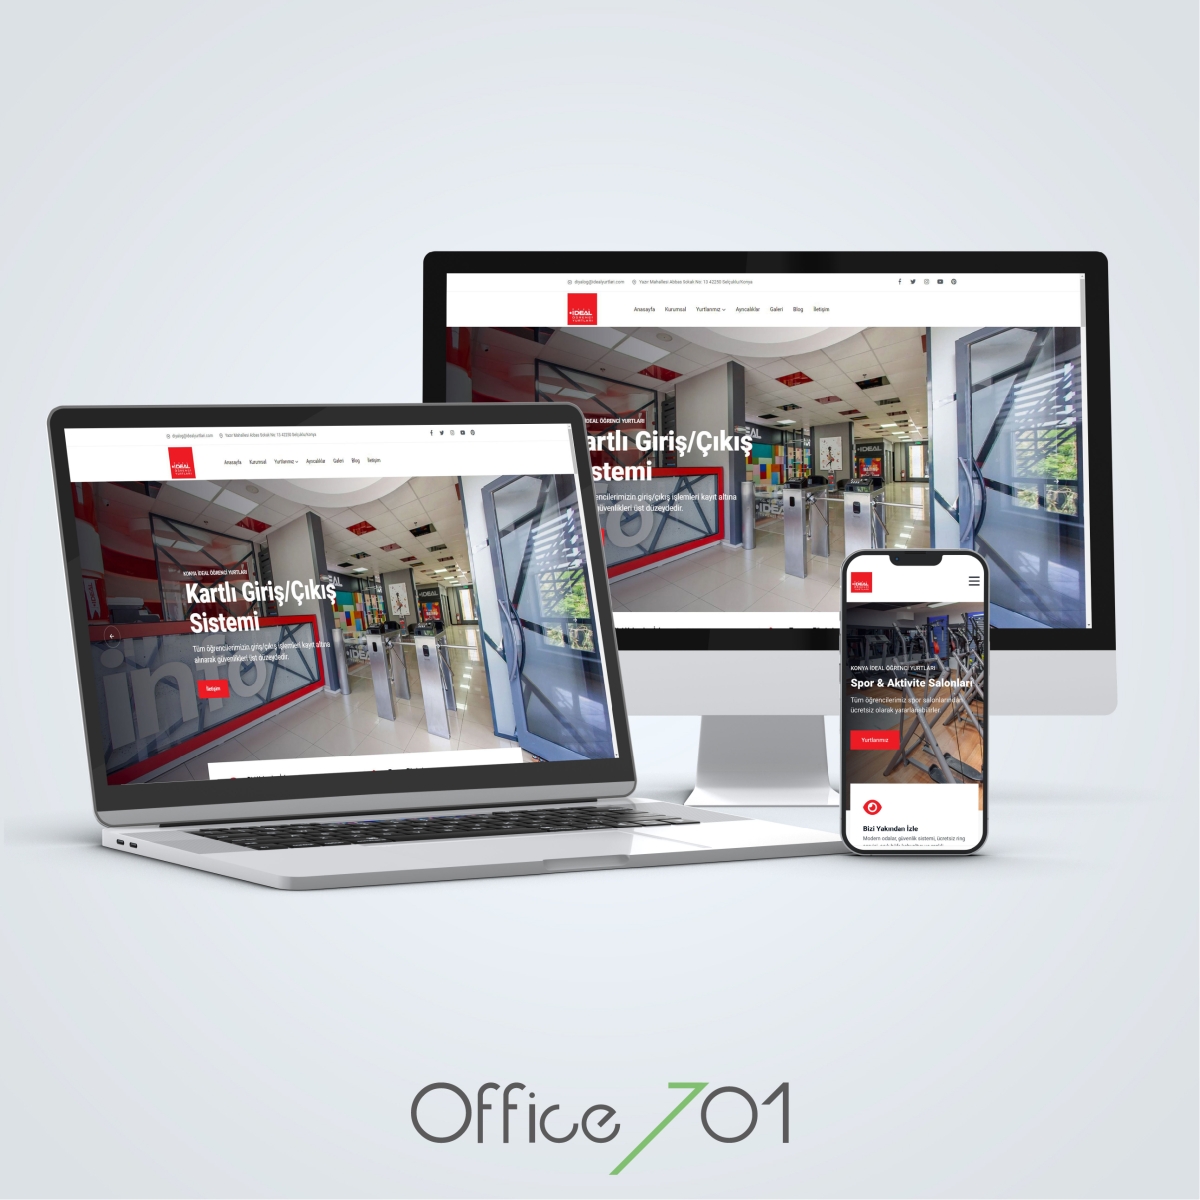 Office701 | Konya İdeal Öğrenci Yurtları Web Sitesi